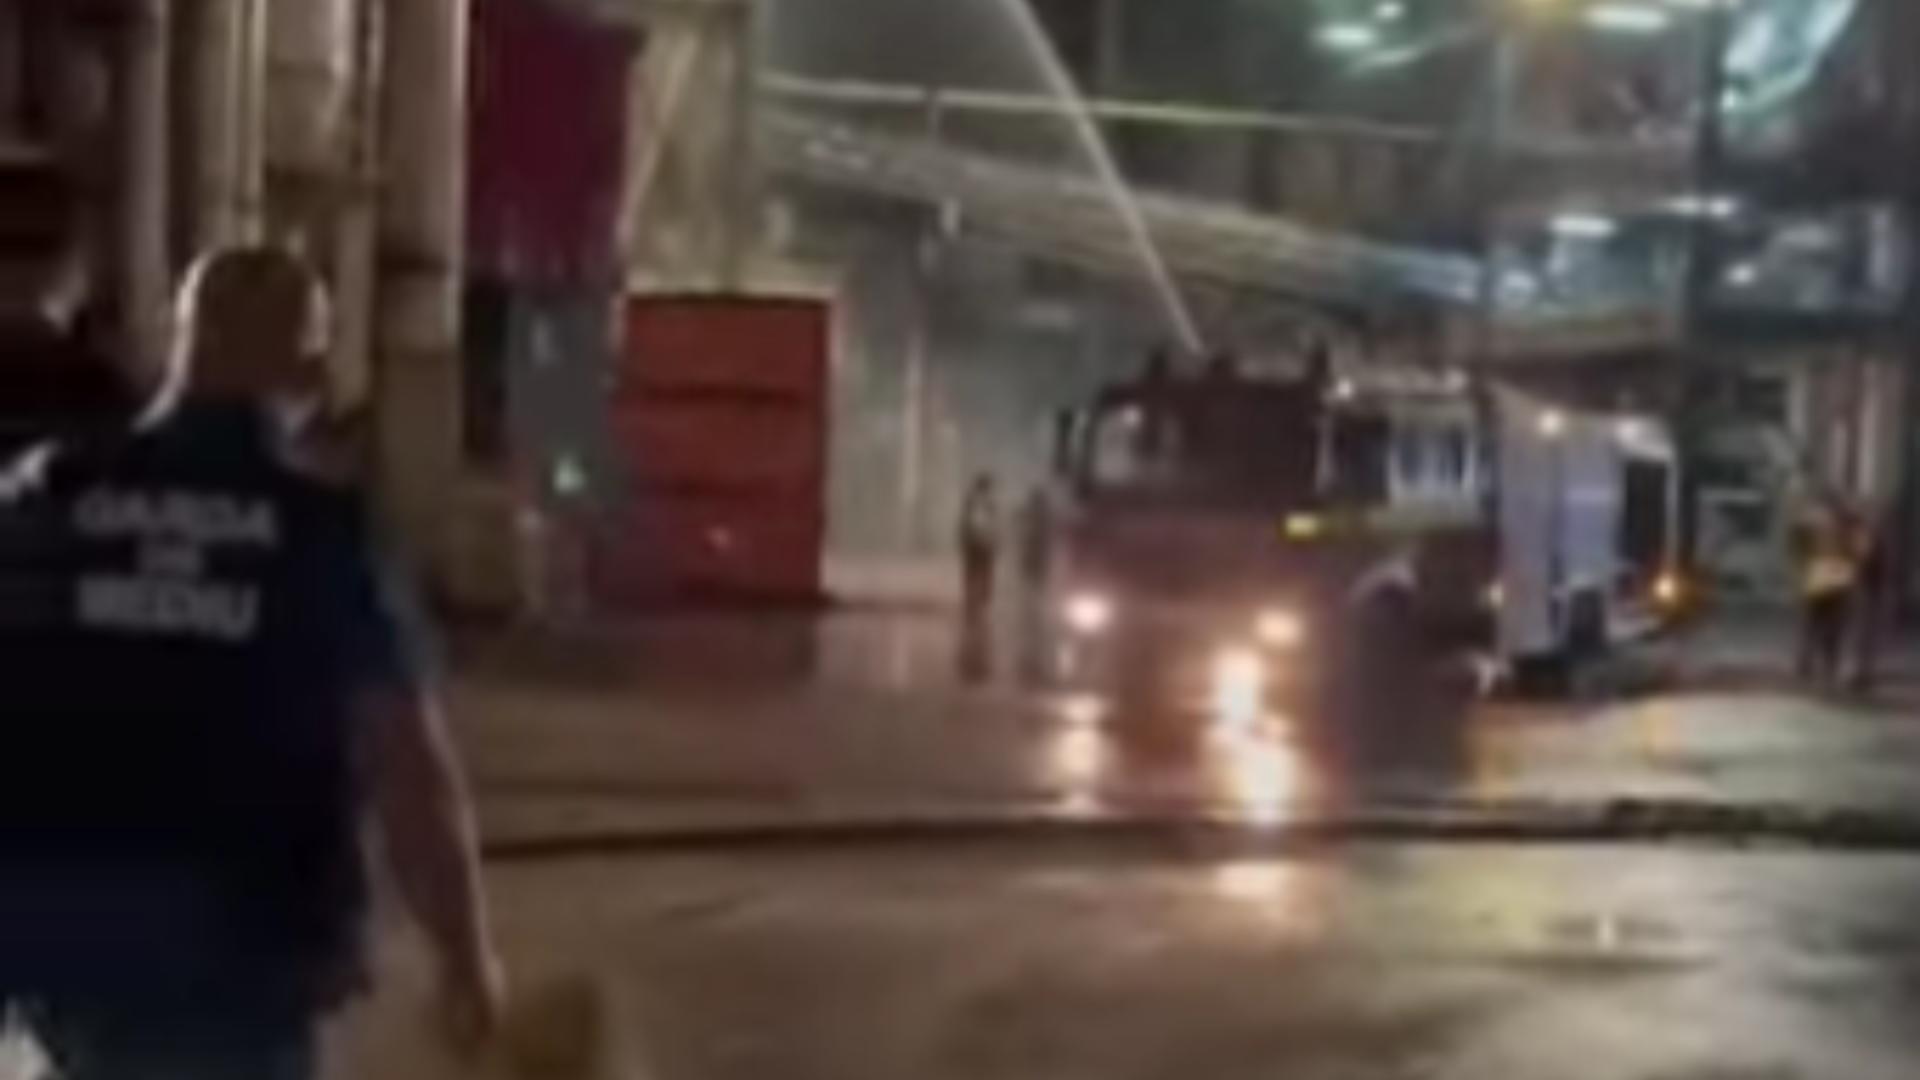 Incendiu puternic la o fabrică de cherestea deținută de austrieci, în Sebeș - Garda de Mediu s-a deplasat la fața locului - VIDEO